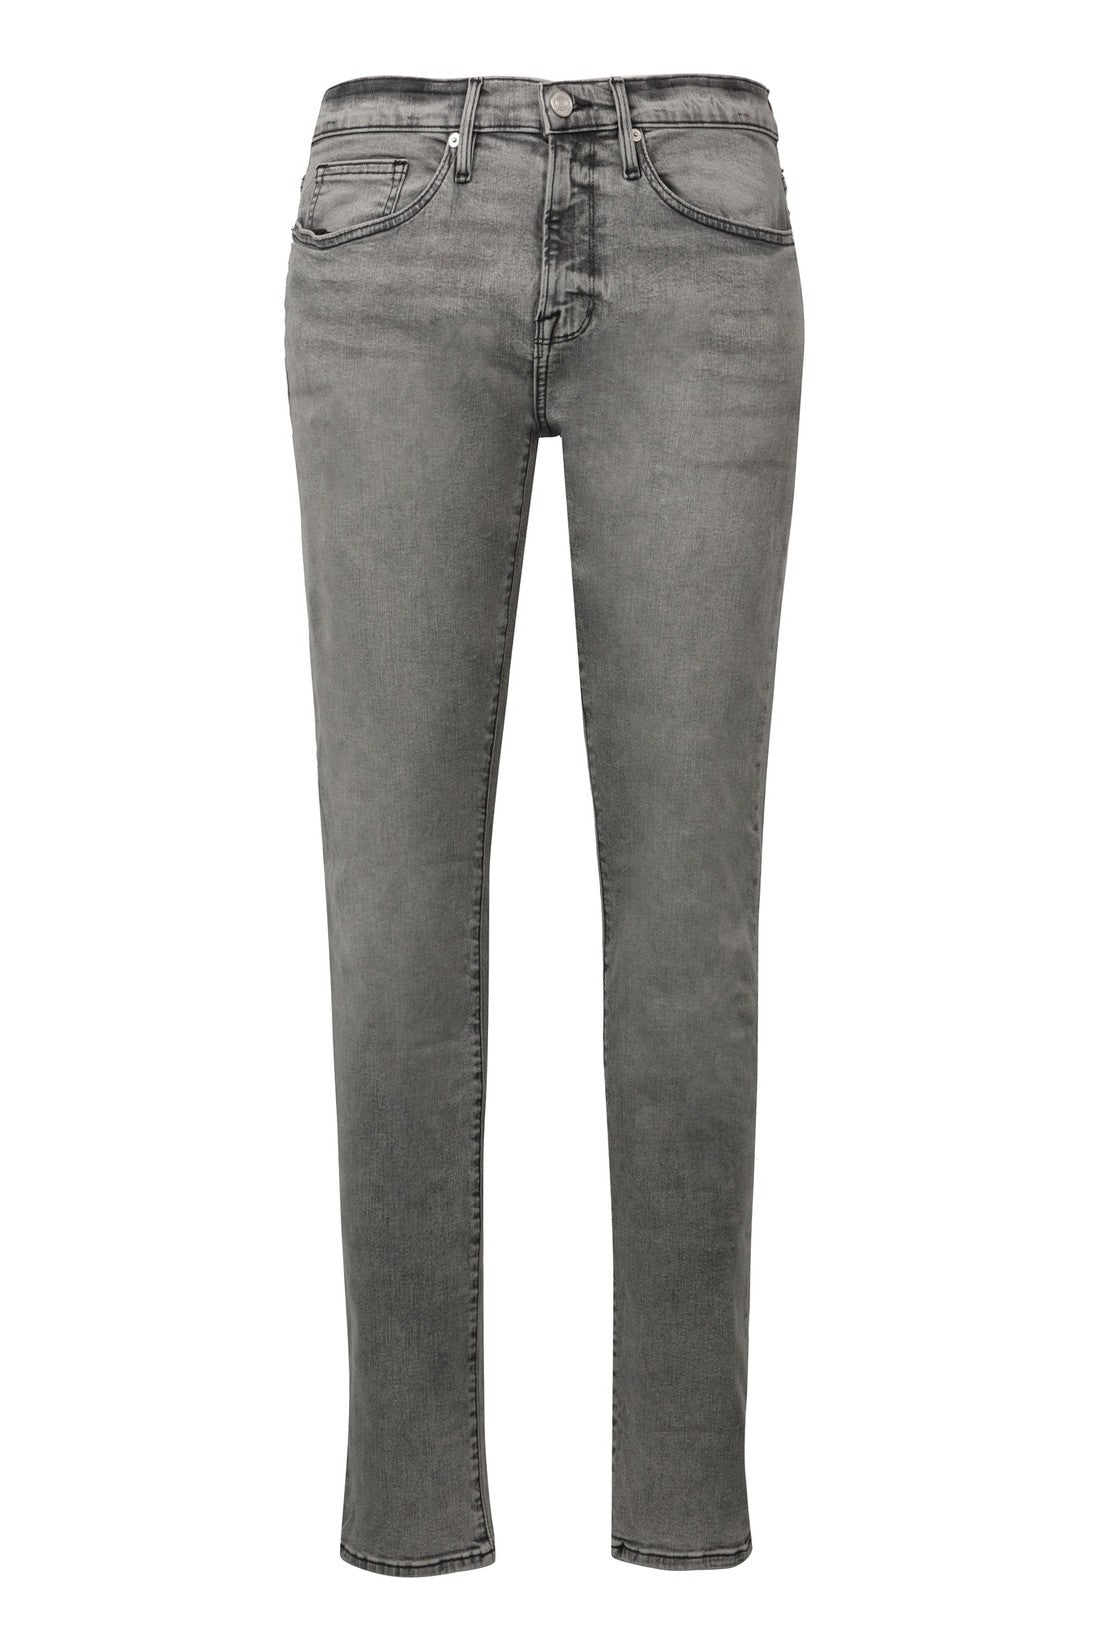 Frame-OUTLET-SALE-Solano 5-pocket slim fit jeans-ARCHIVIST